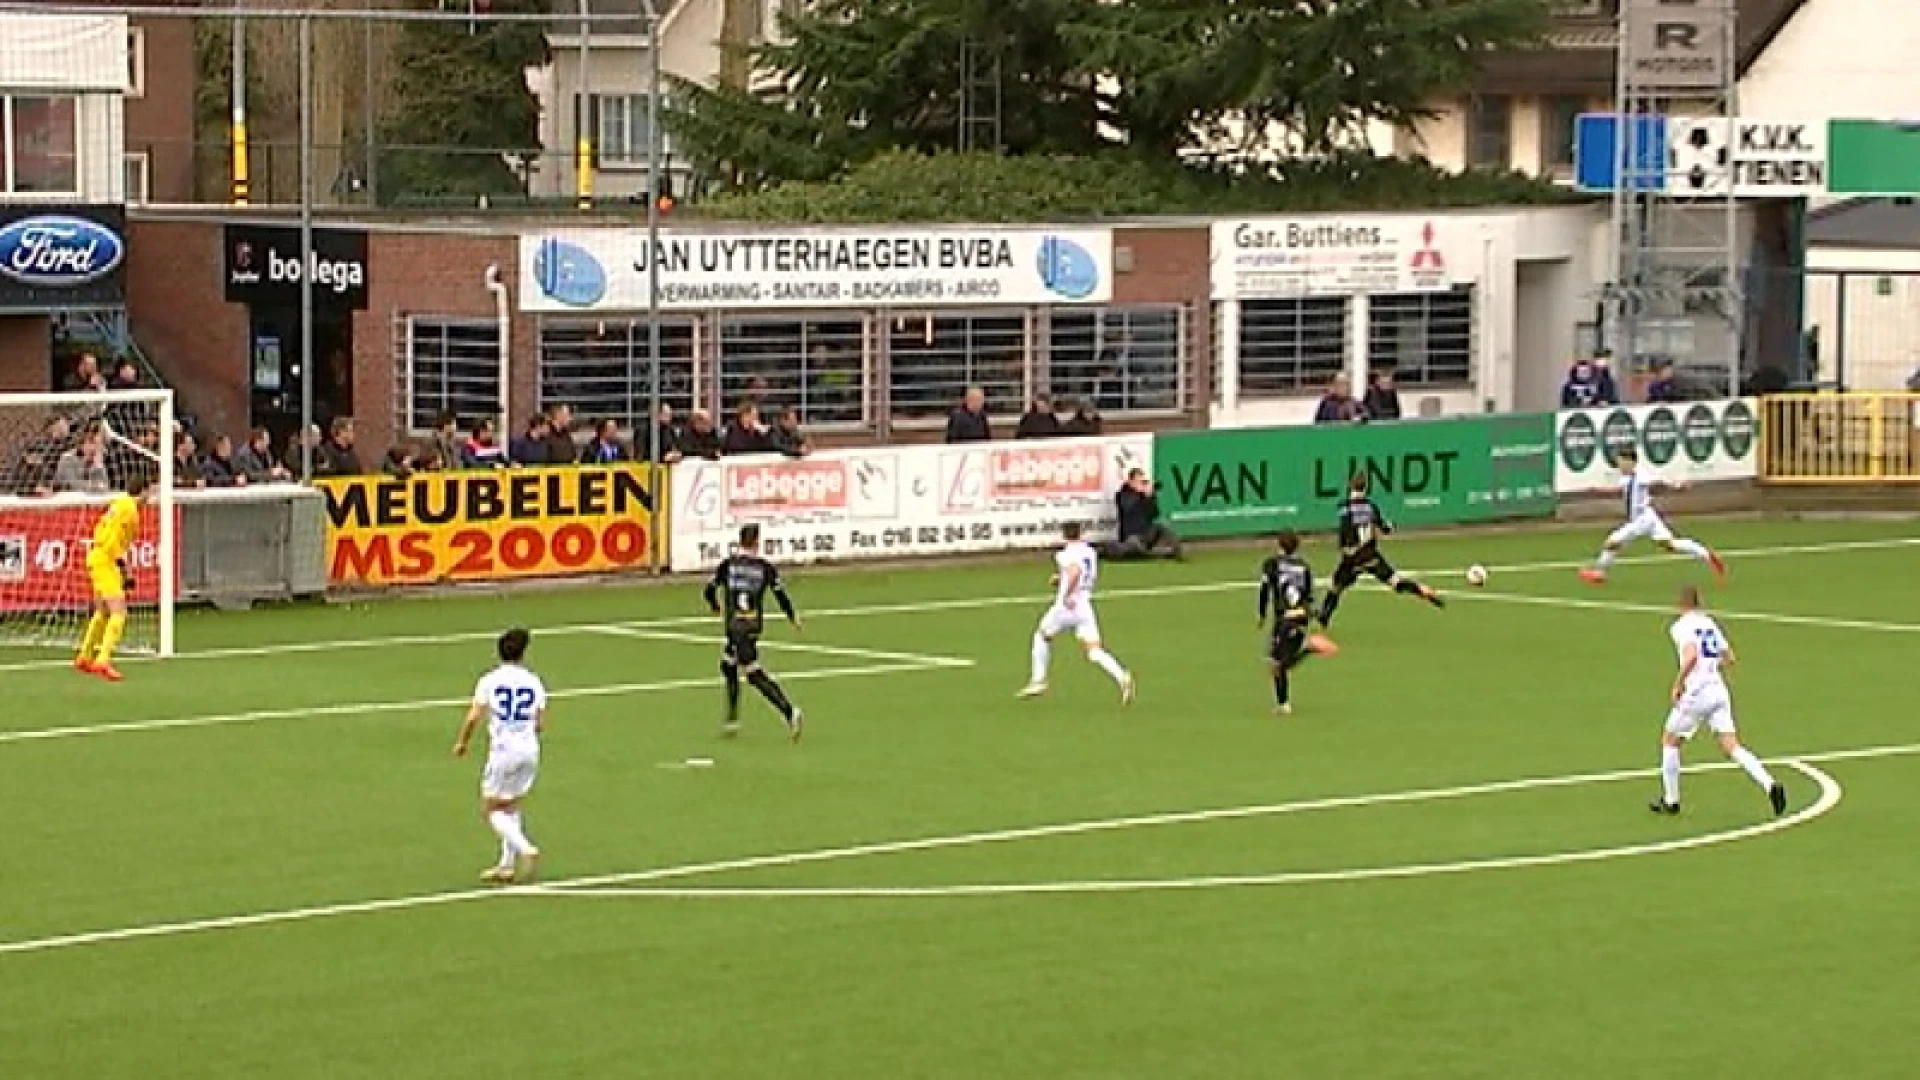 KVK Tienen speelt voortaan in eerste nationale, ook andere amateurreeksen krijgen nieuwe naam